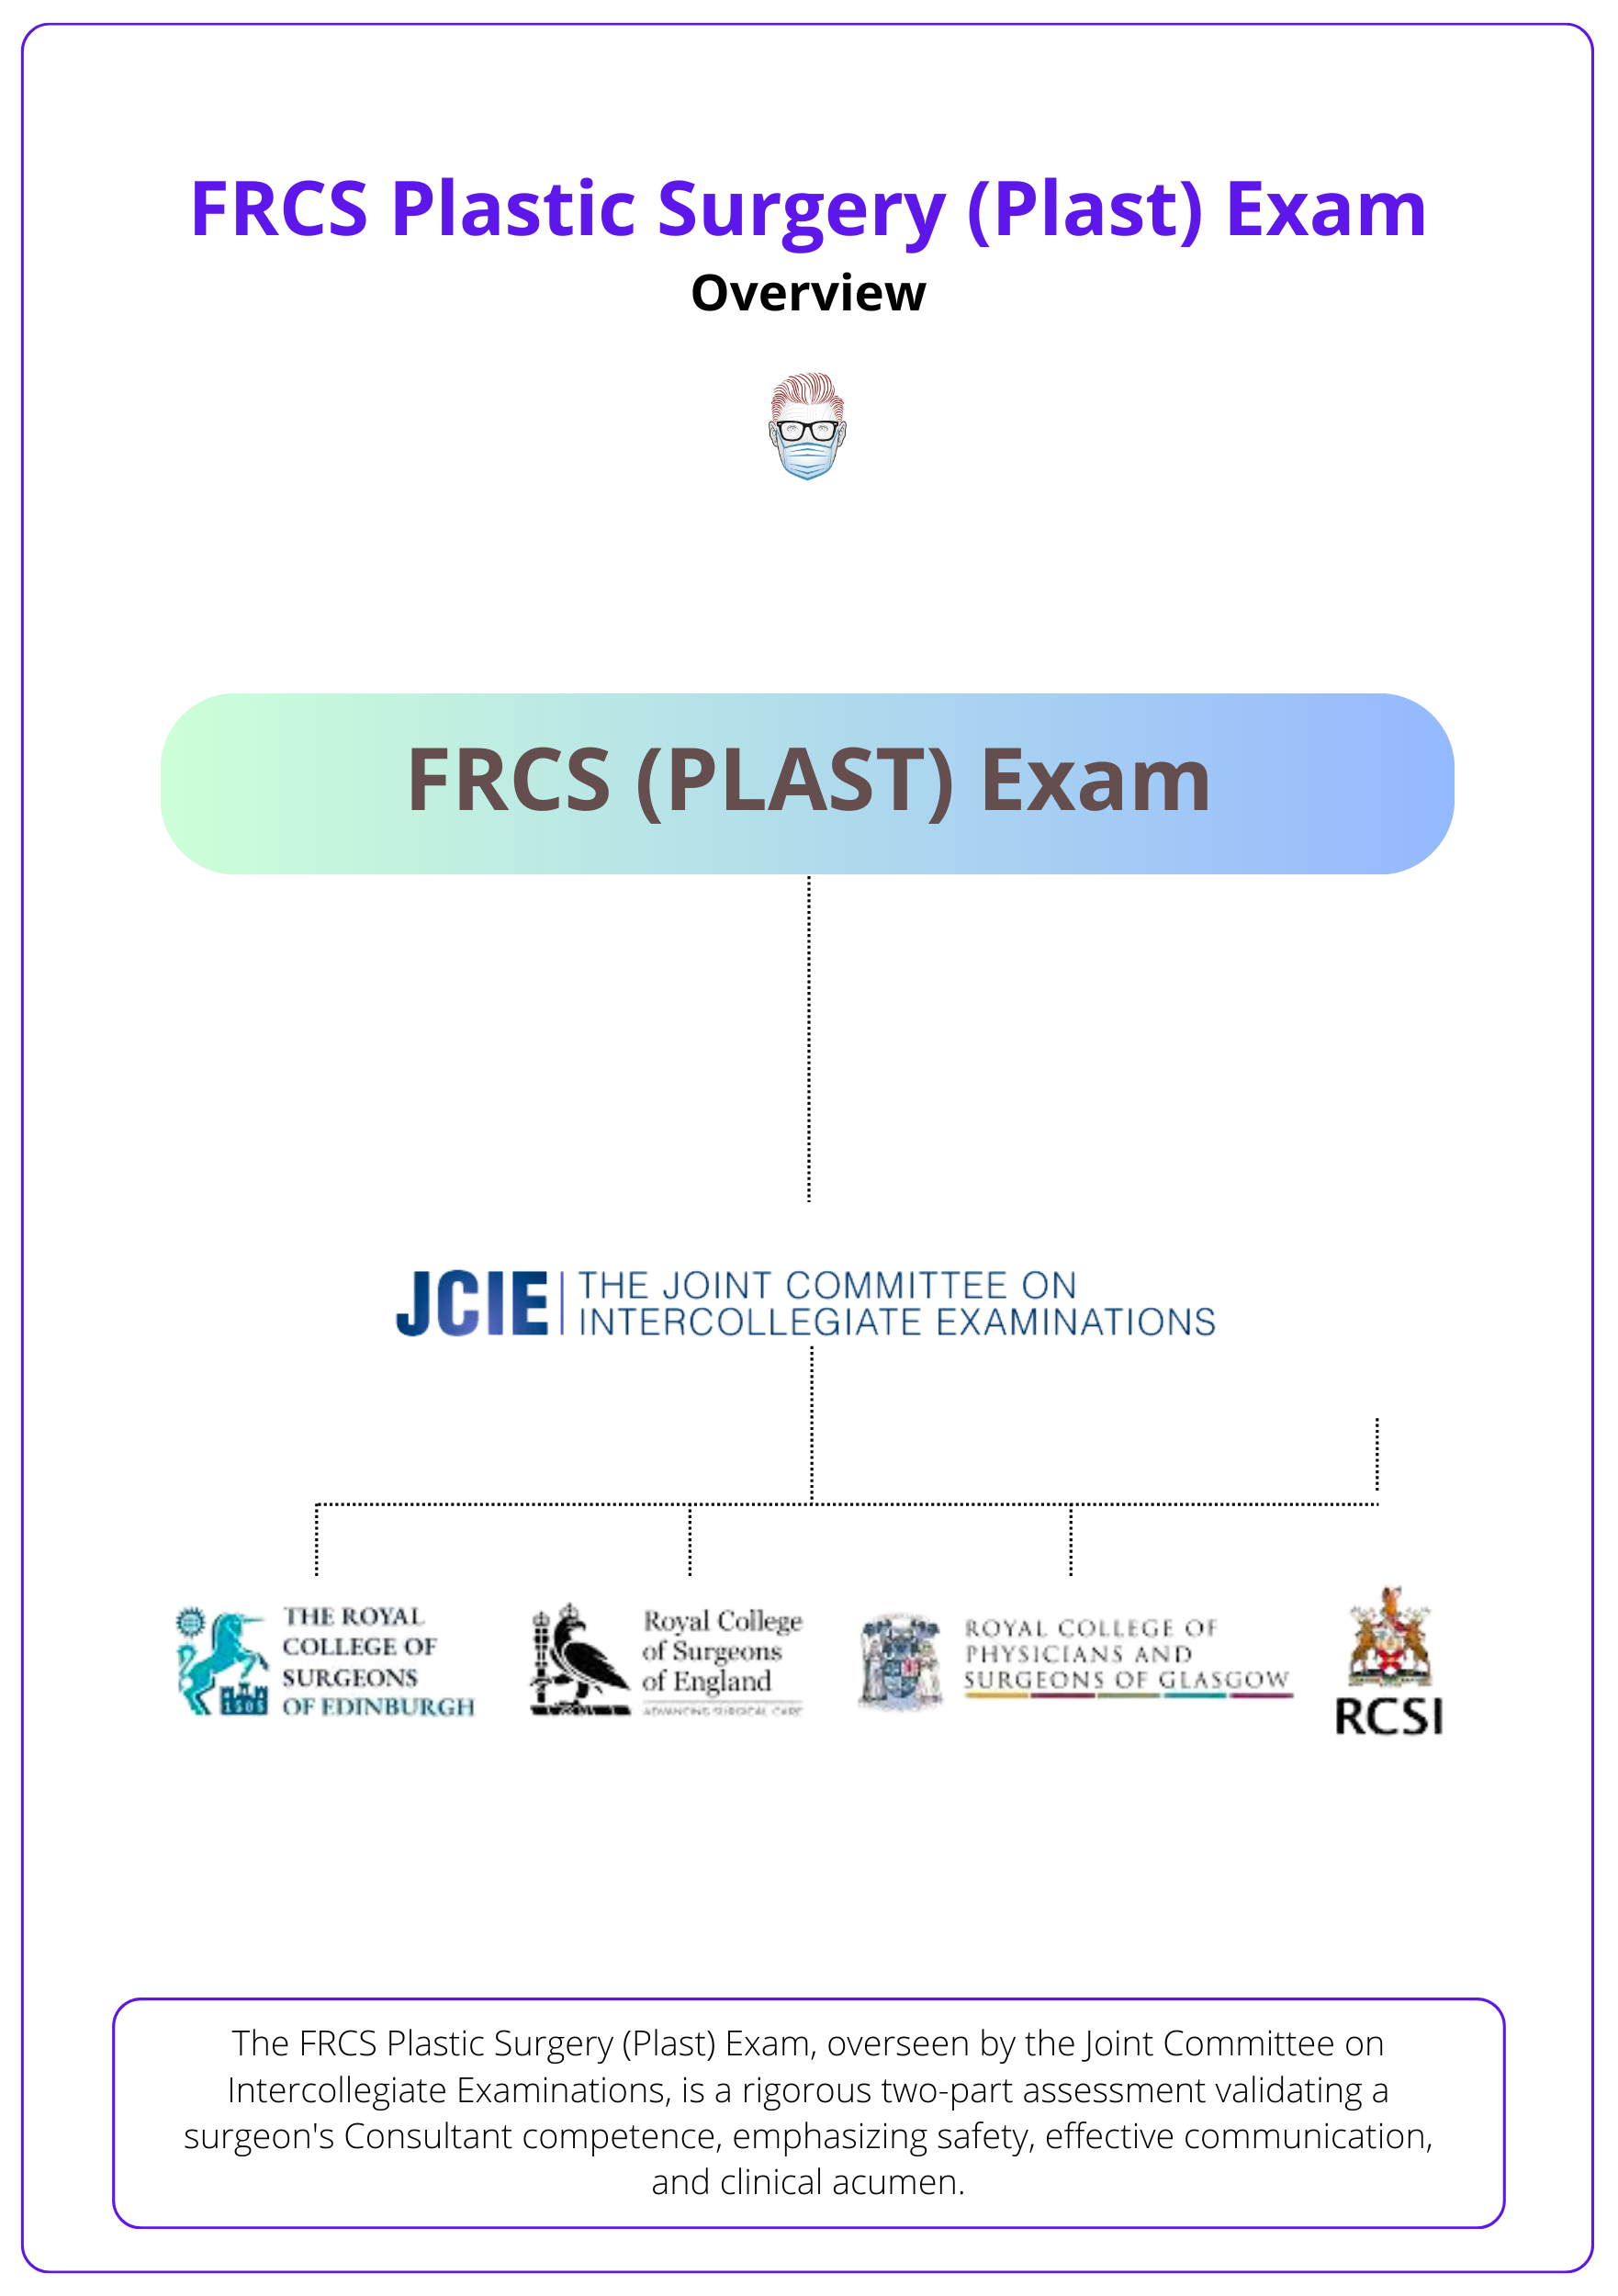 FRCS Governance, FRCS Plastic Surgery, FRCS Plast, FRCS Exam